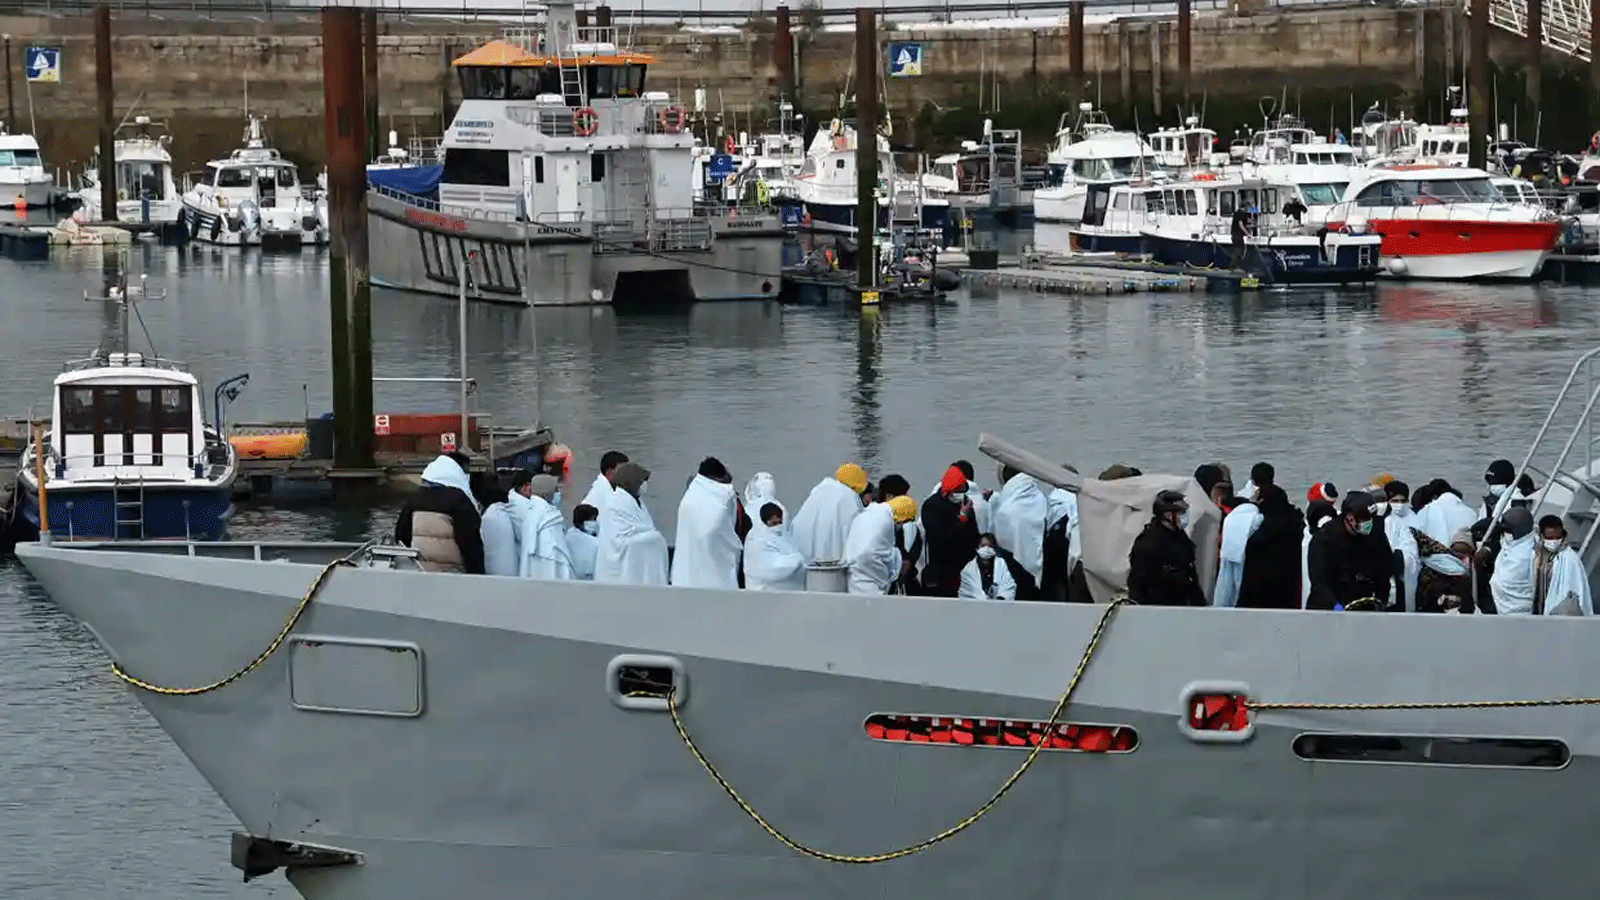 يتم إحضار المهاجرين إلى ميناء في مرسى دوفر من قبل قوة الحدود البريطانية بعد أن تم القبض عليهم وهم يعبرون القنال من فرنسا في 14 نيسان\ أبريل 2022